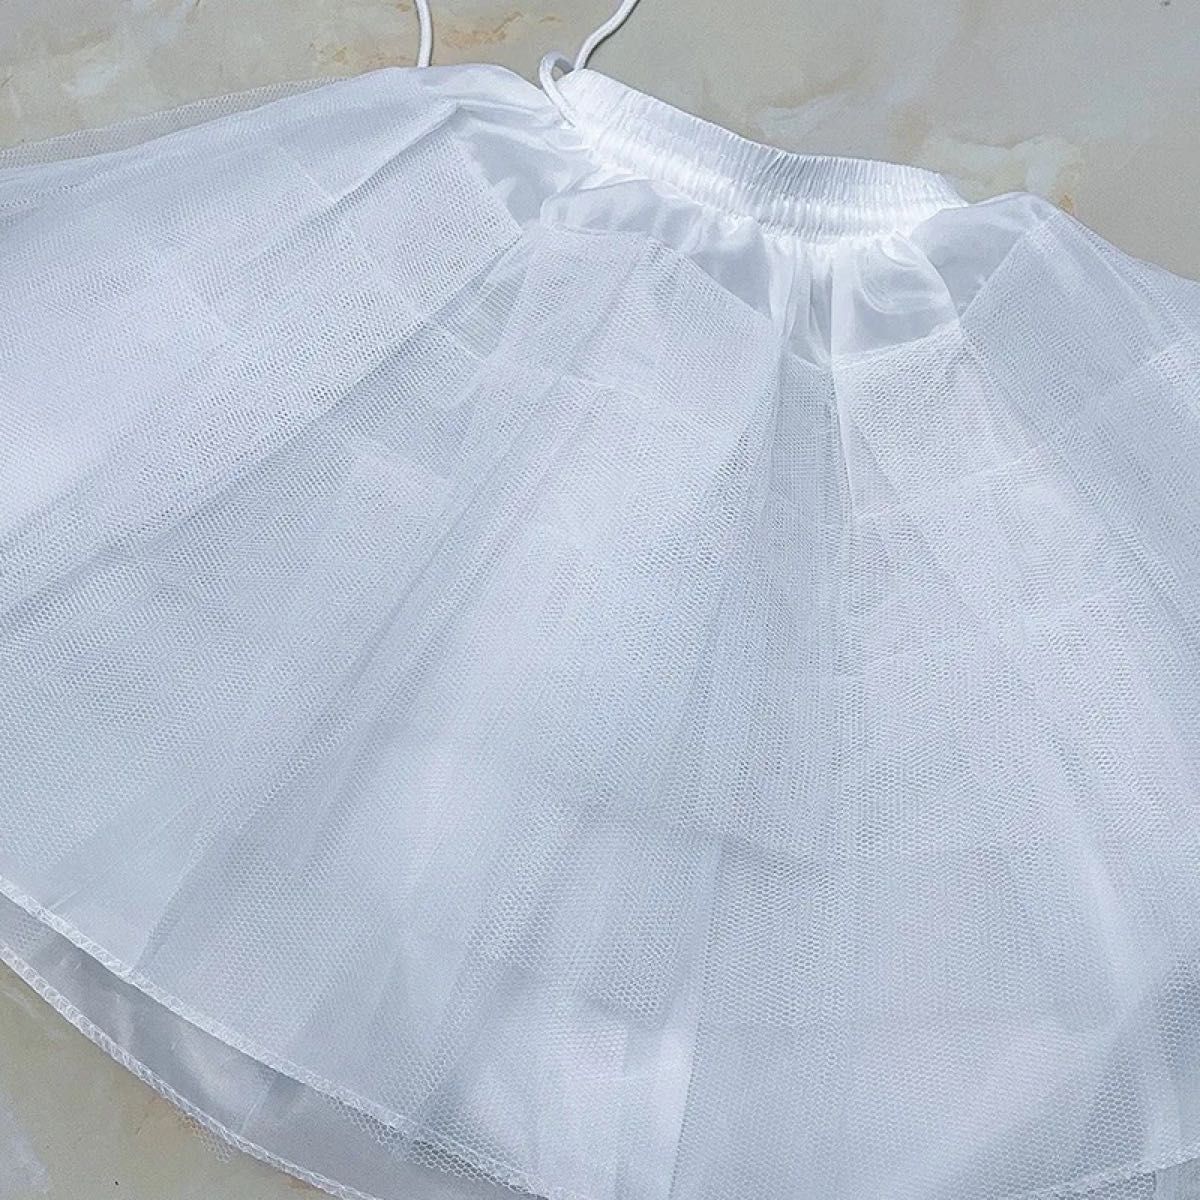 ボリュームパニエ ドレス フリル コスプレ ウェディング スカート パニエ 白 ホワイト 発表会 子供 キッズ